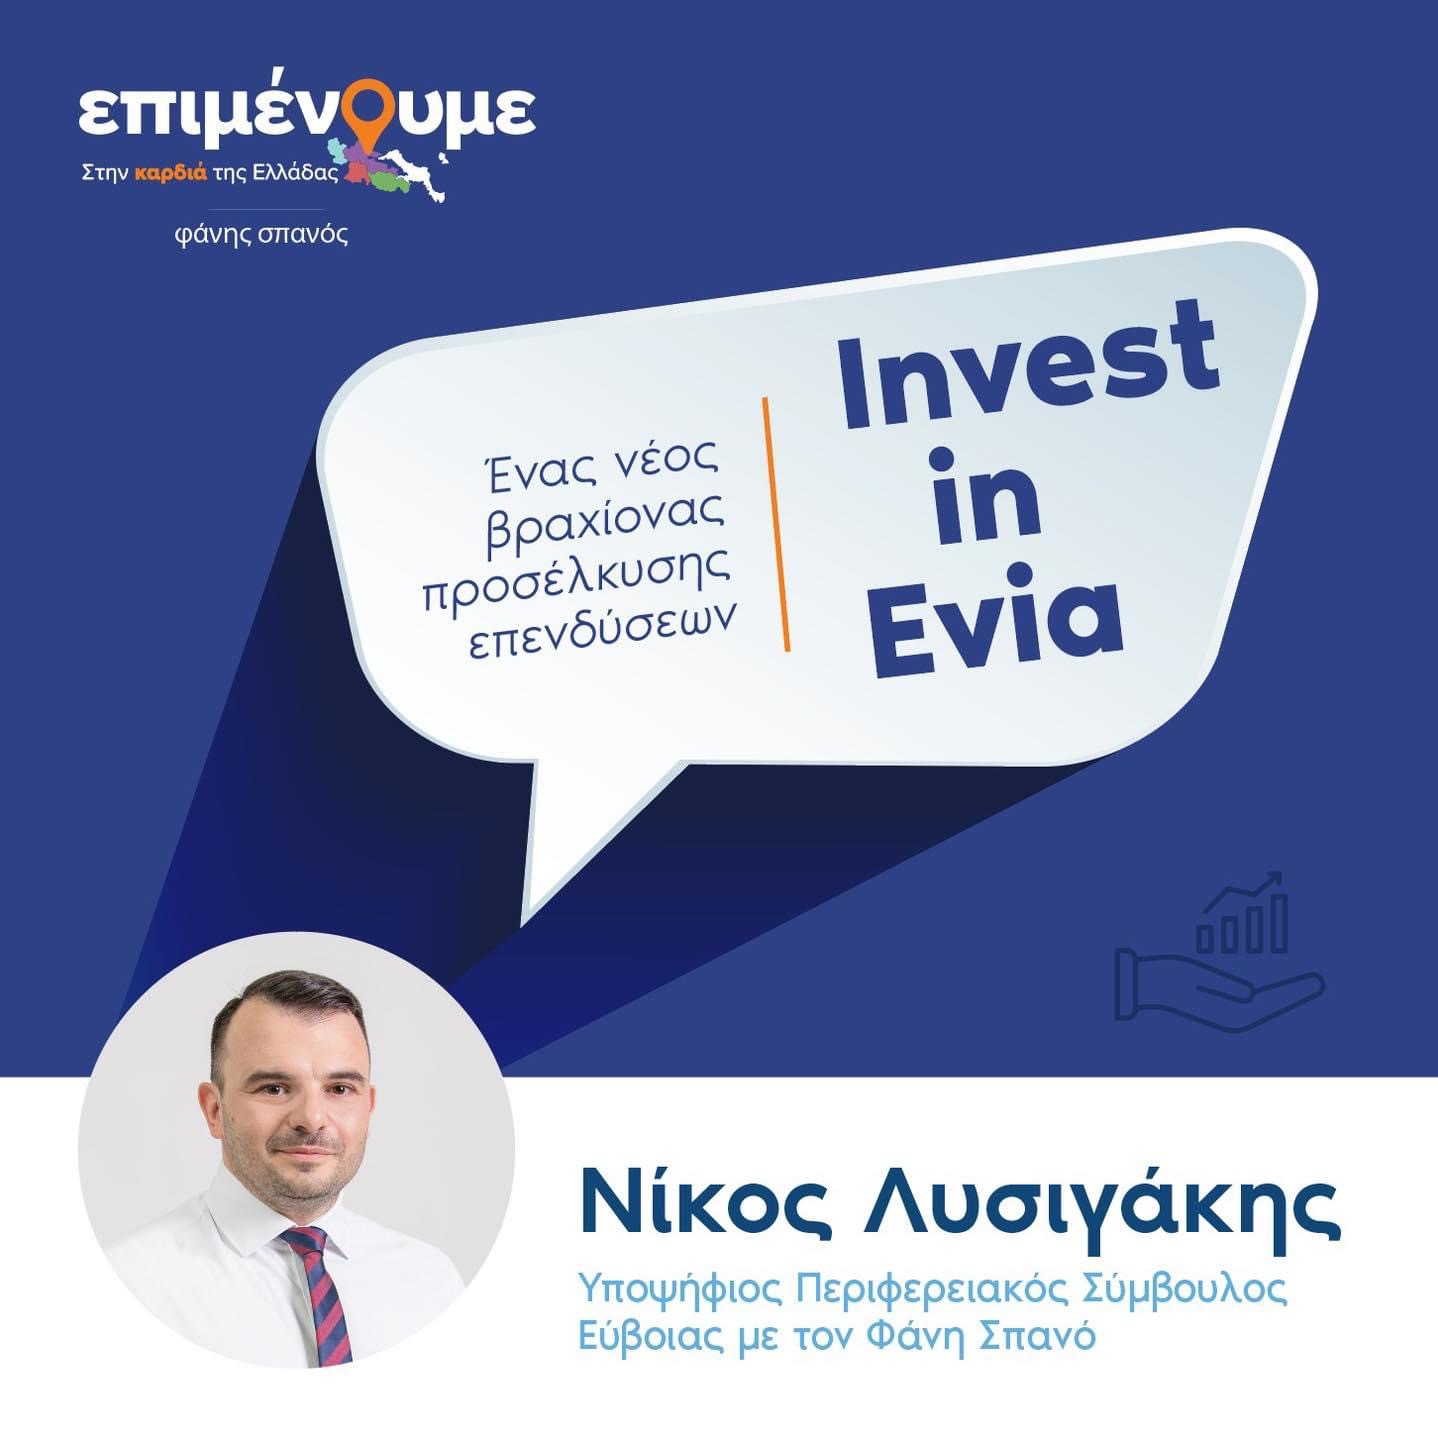 Τι είναι το Invest in Evia που προτείνει ο Νίκος Λυσιγάκης